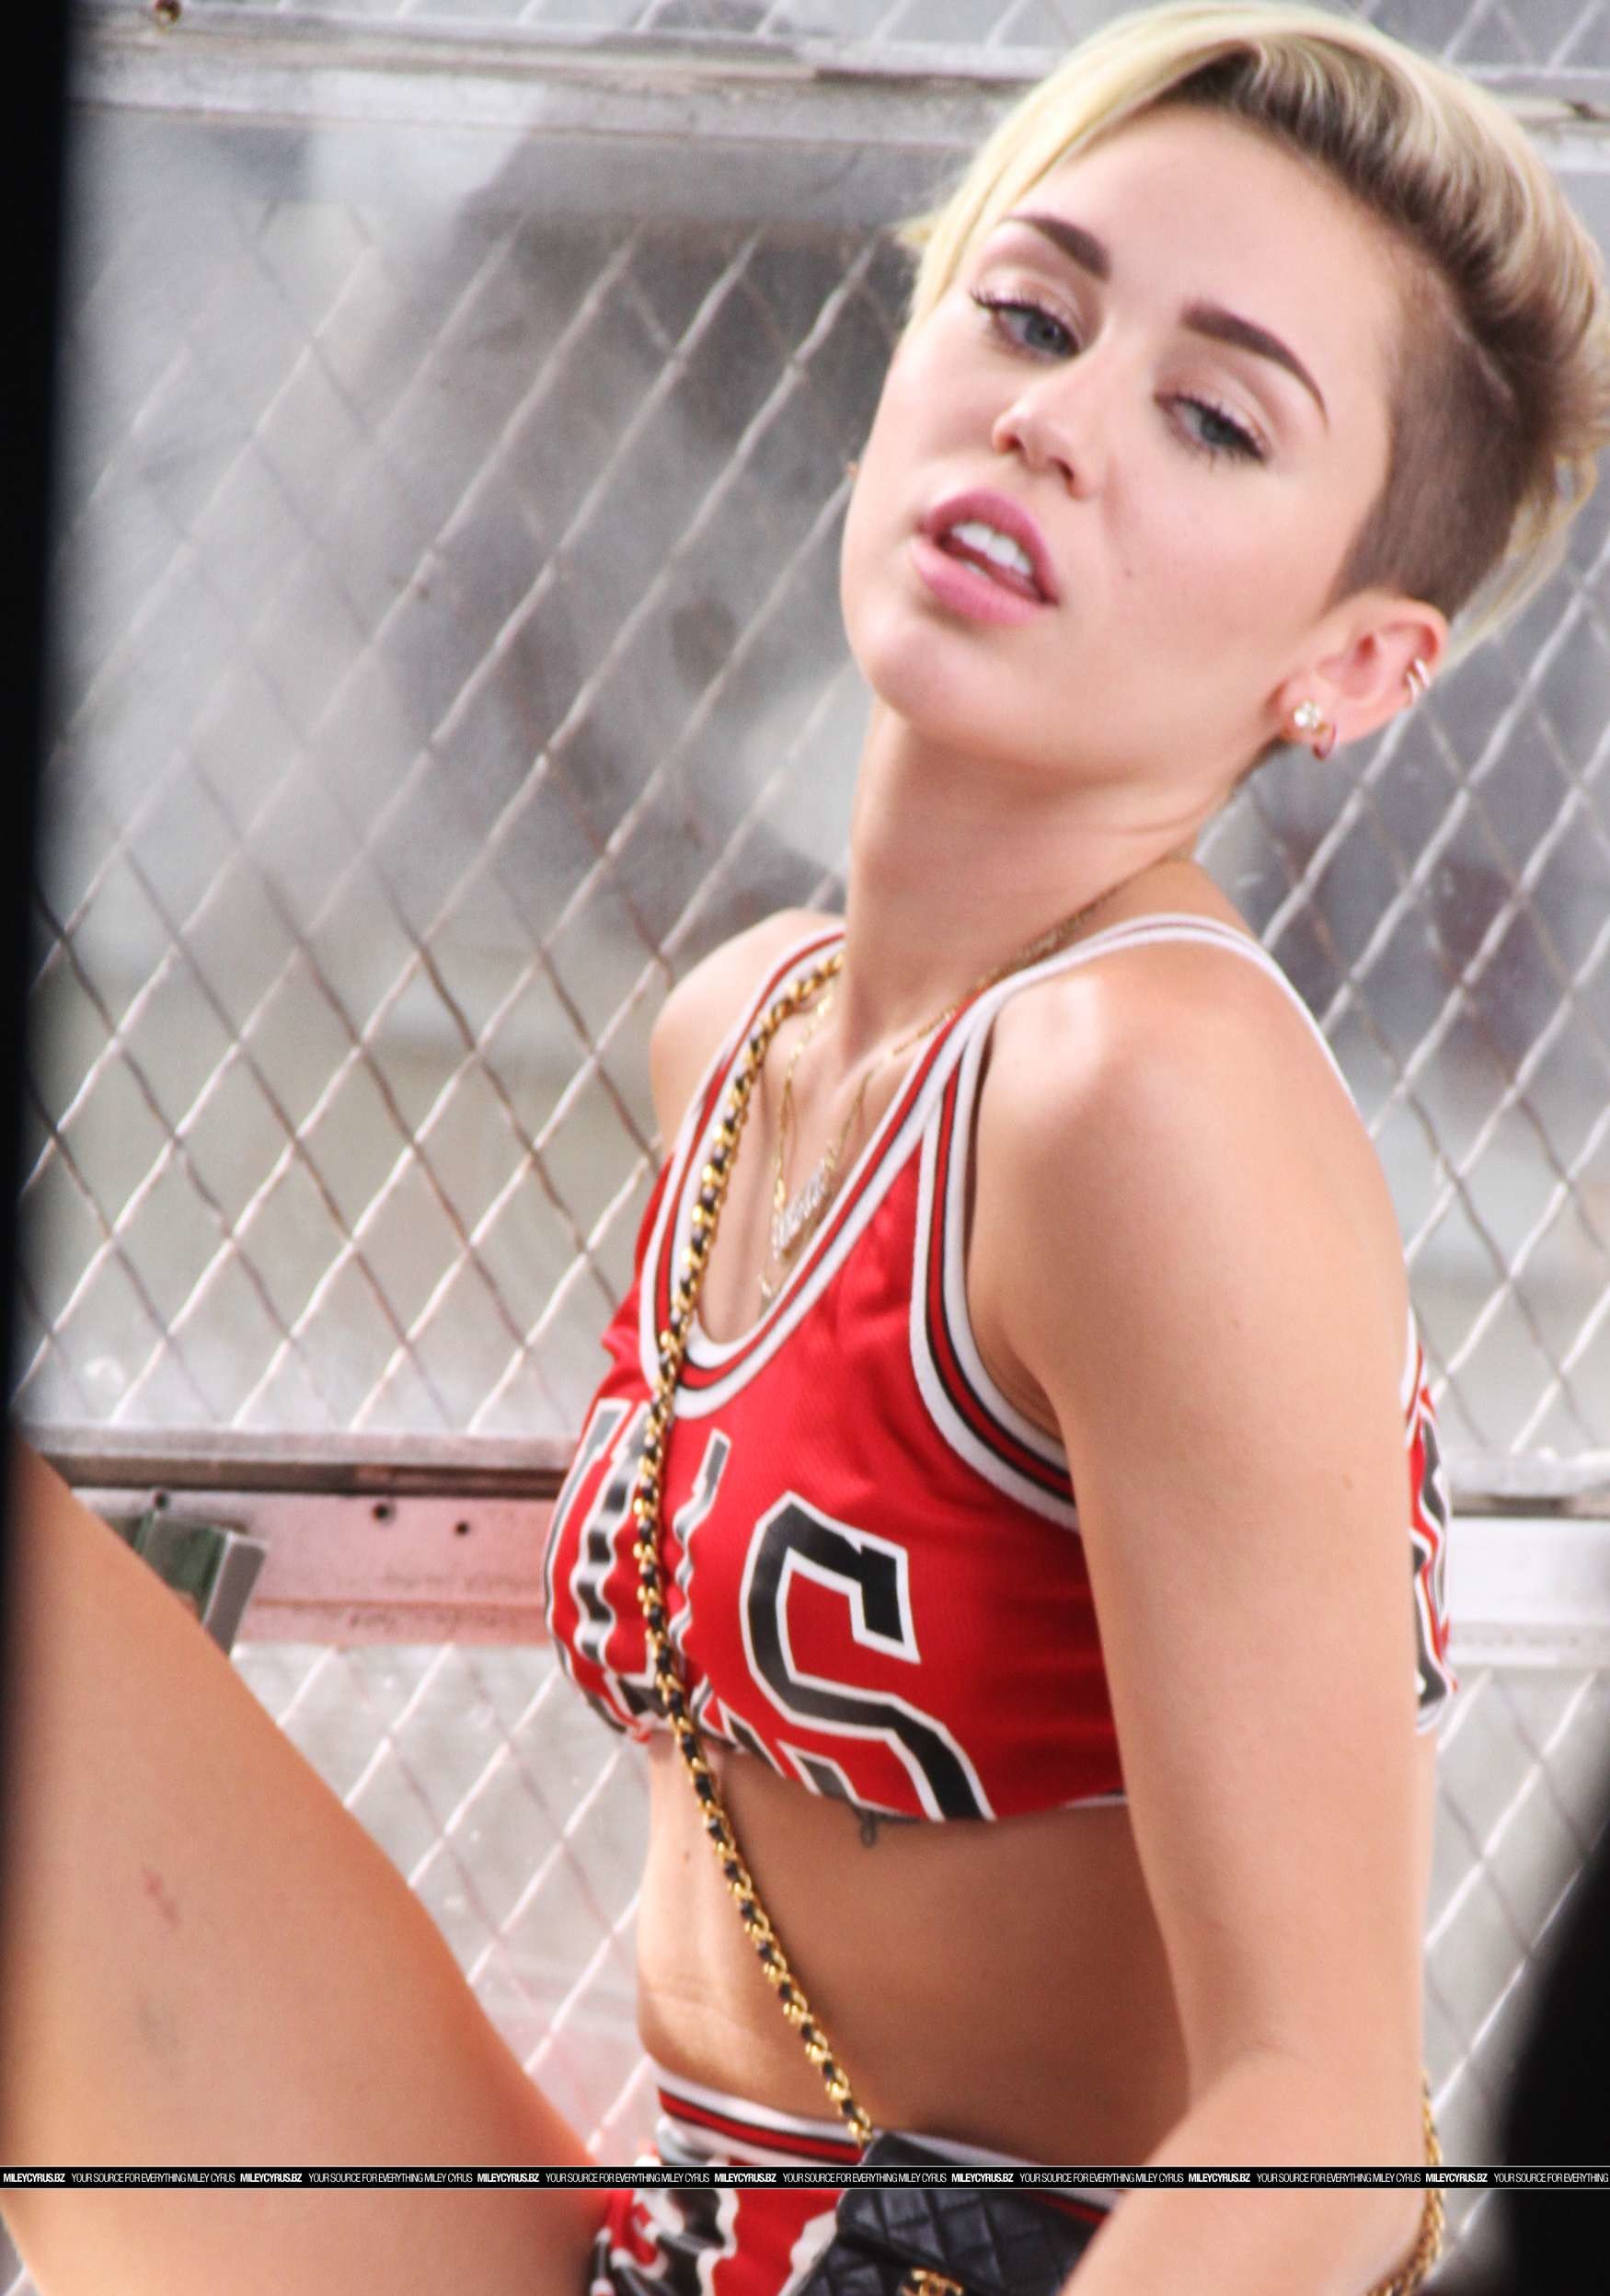 Miley Cyrus 23 Music Video Portraits Miley Cyrus Short Hair 23 1750x2495 Wallpaper Teahub Io